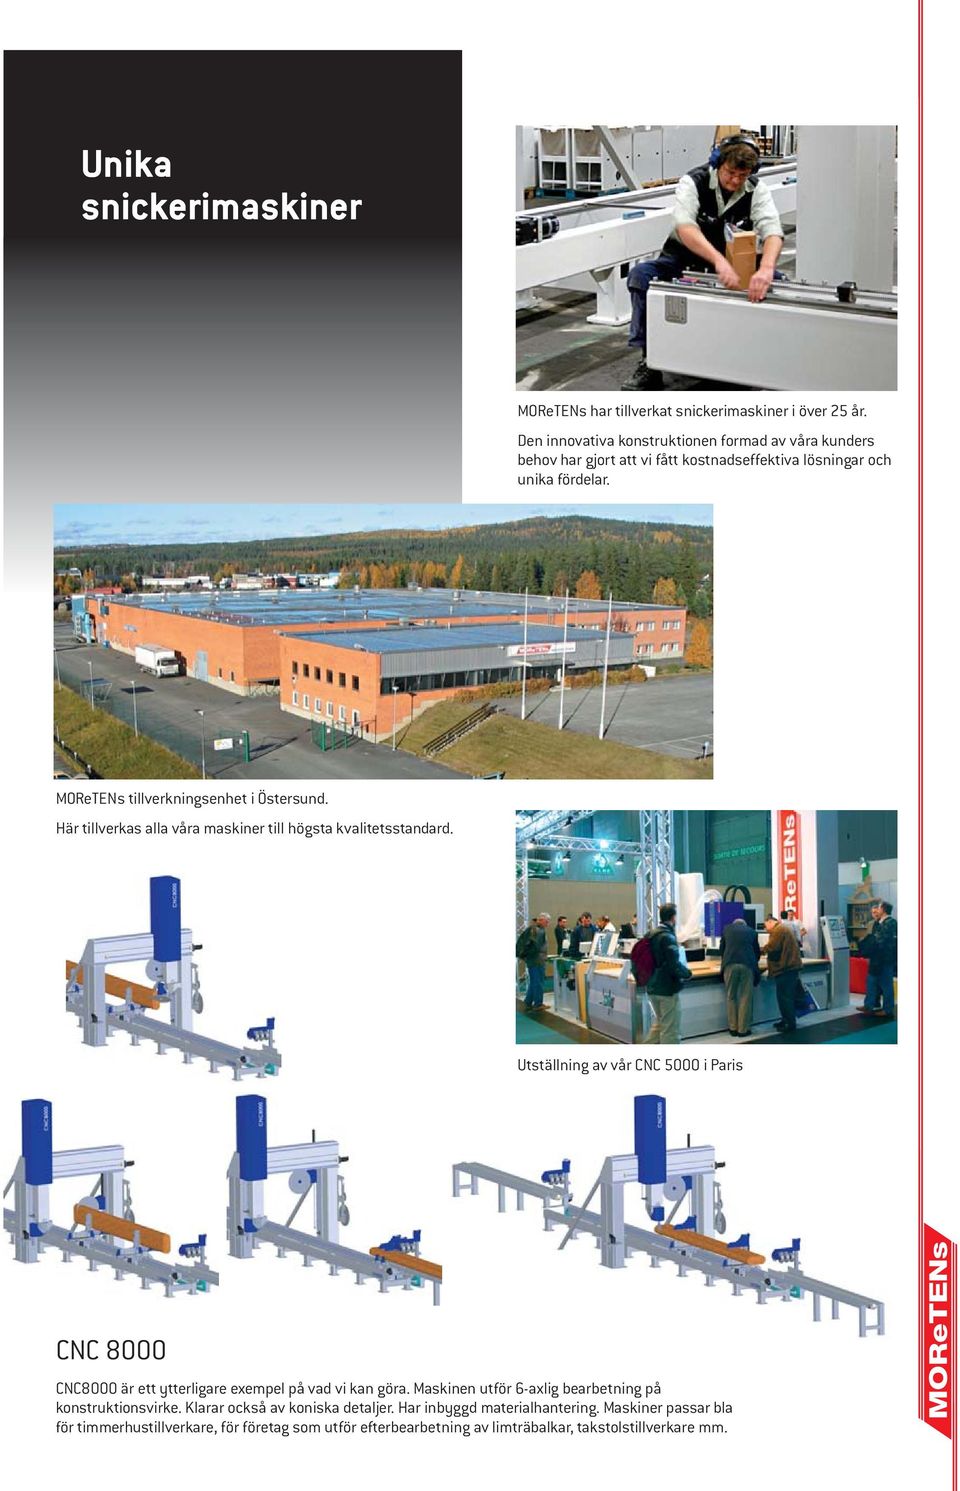 MOReTENs tillverkningsenhet i Östersund. Här tillverkas alla våra maskiner till högsta kvalitetsstandard.